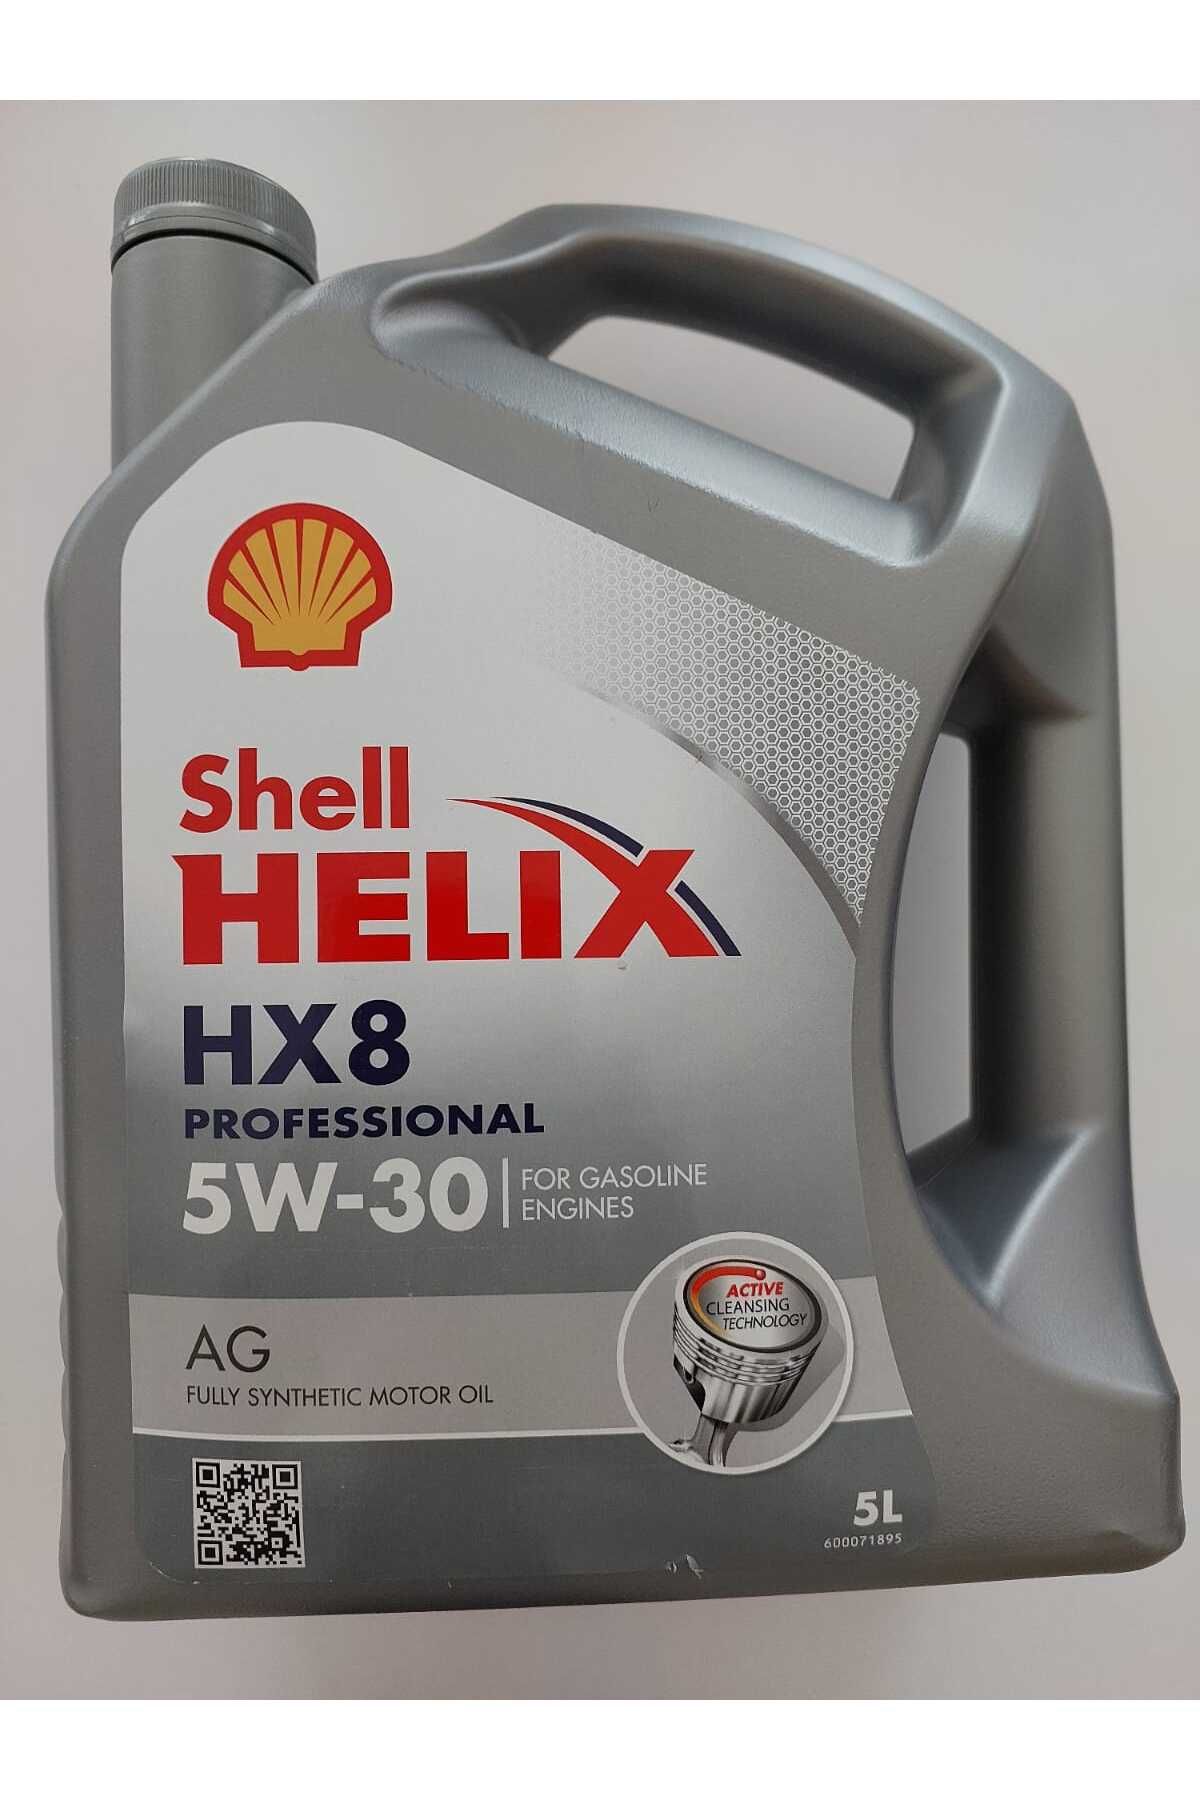 Shell HELİX HX8 PROFEESİONAL AG 5W/30 DEXOS1 MOTOR YAĞI 5LT Fiyatı